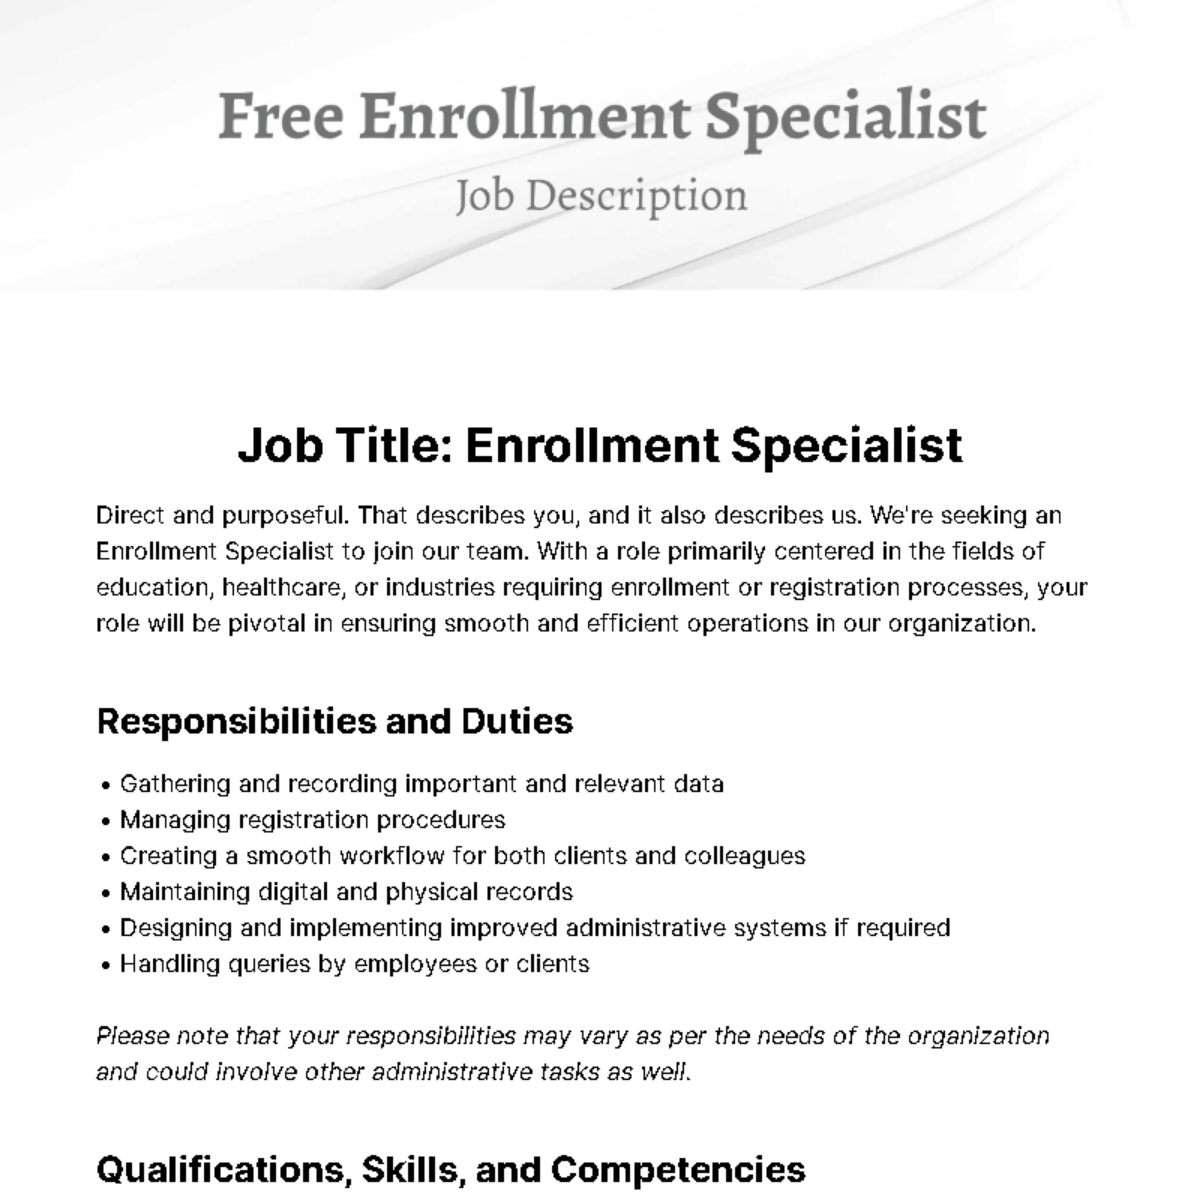 Enrollment Specialist Job Description Template